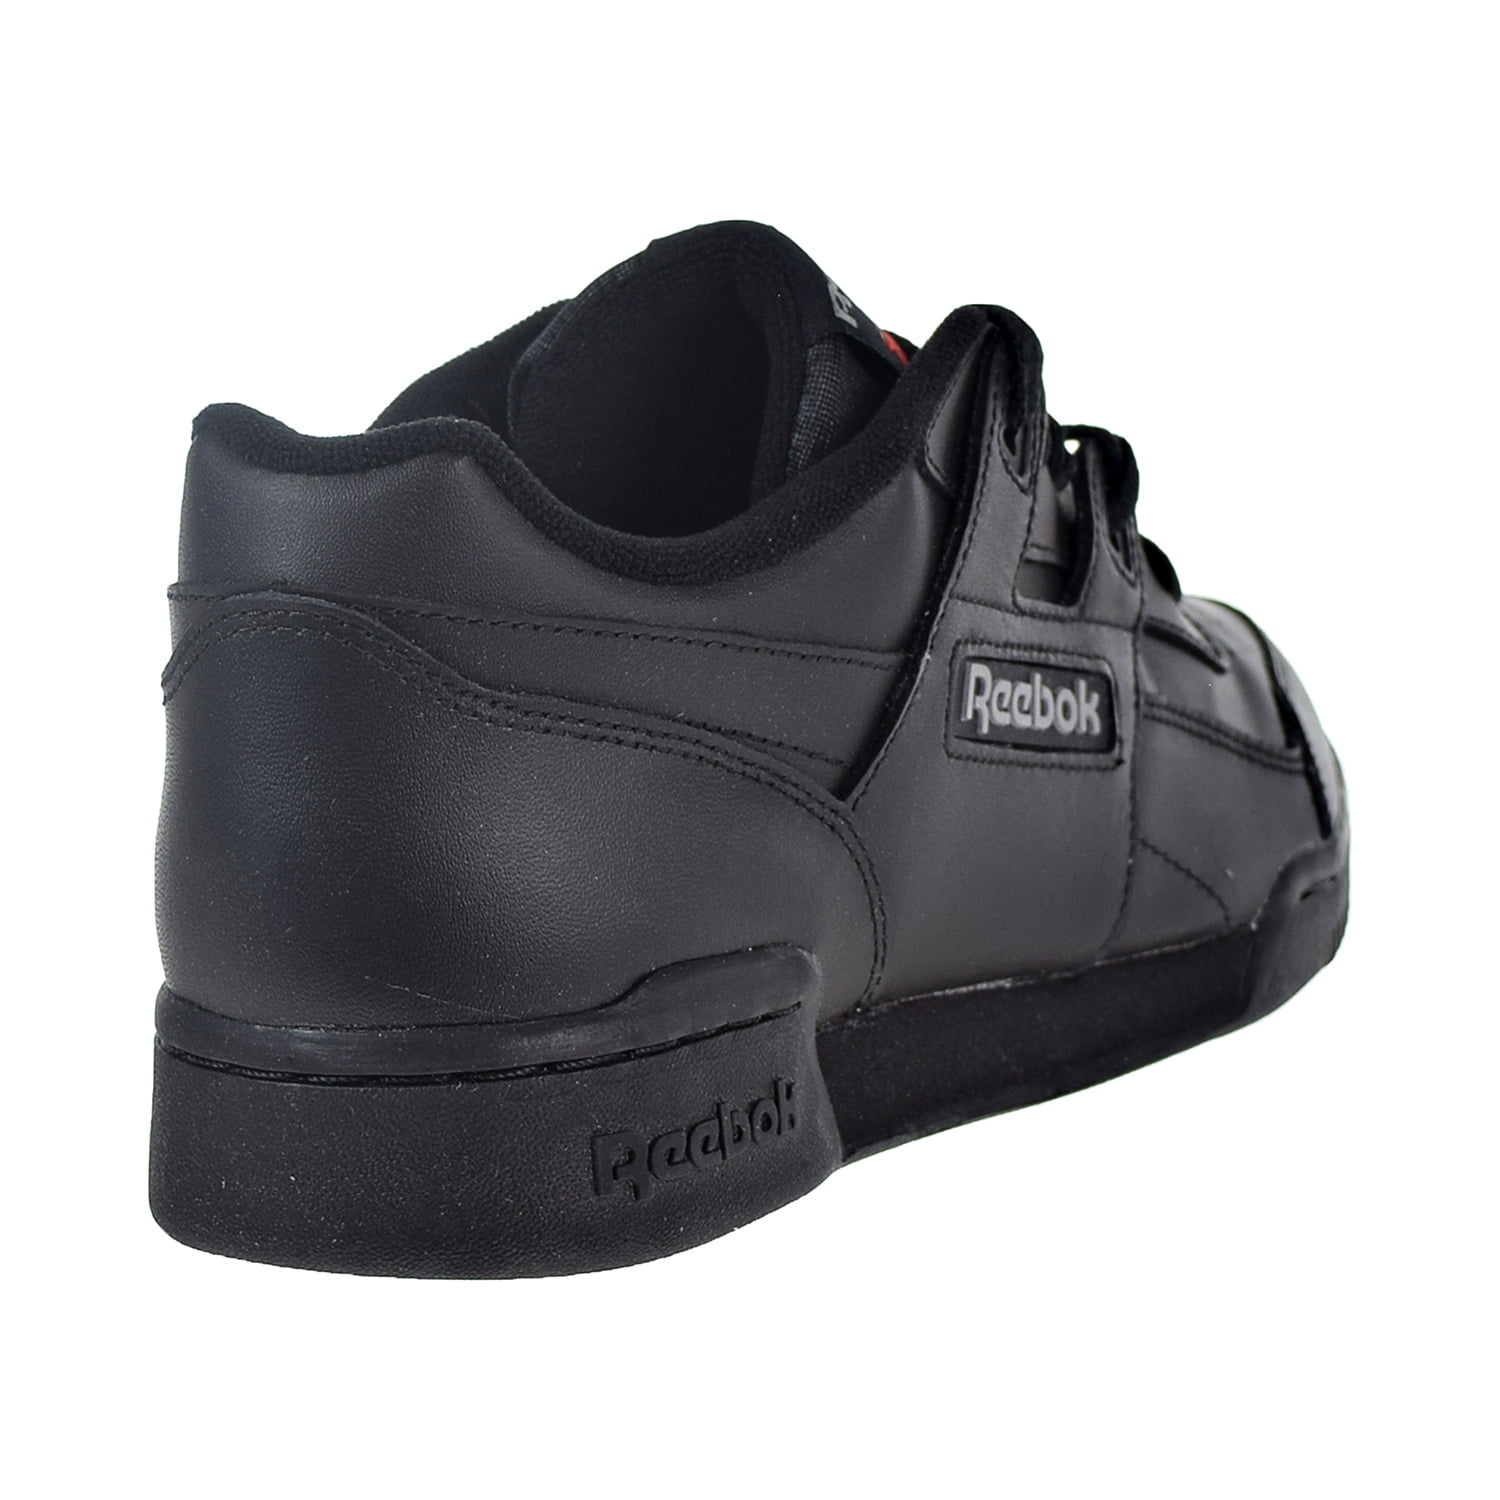 Reebok Reebok Workout Plus Men S Shoes Charcoal Black 2760 Walmart Com Walmart Com